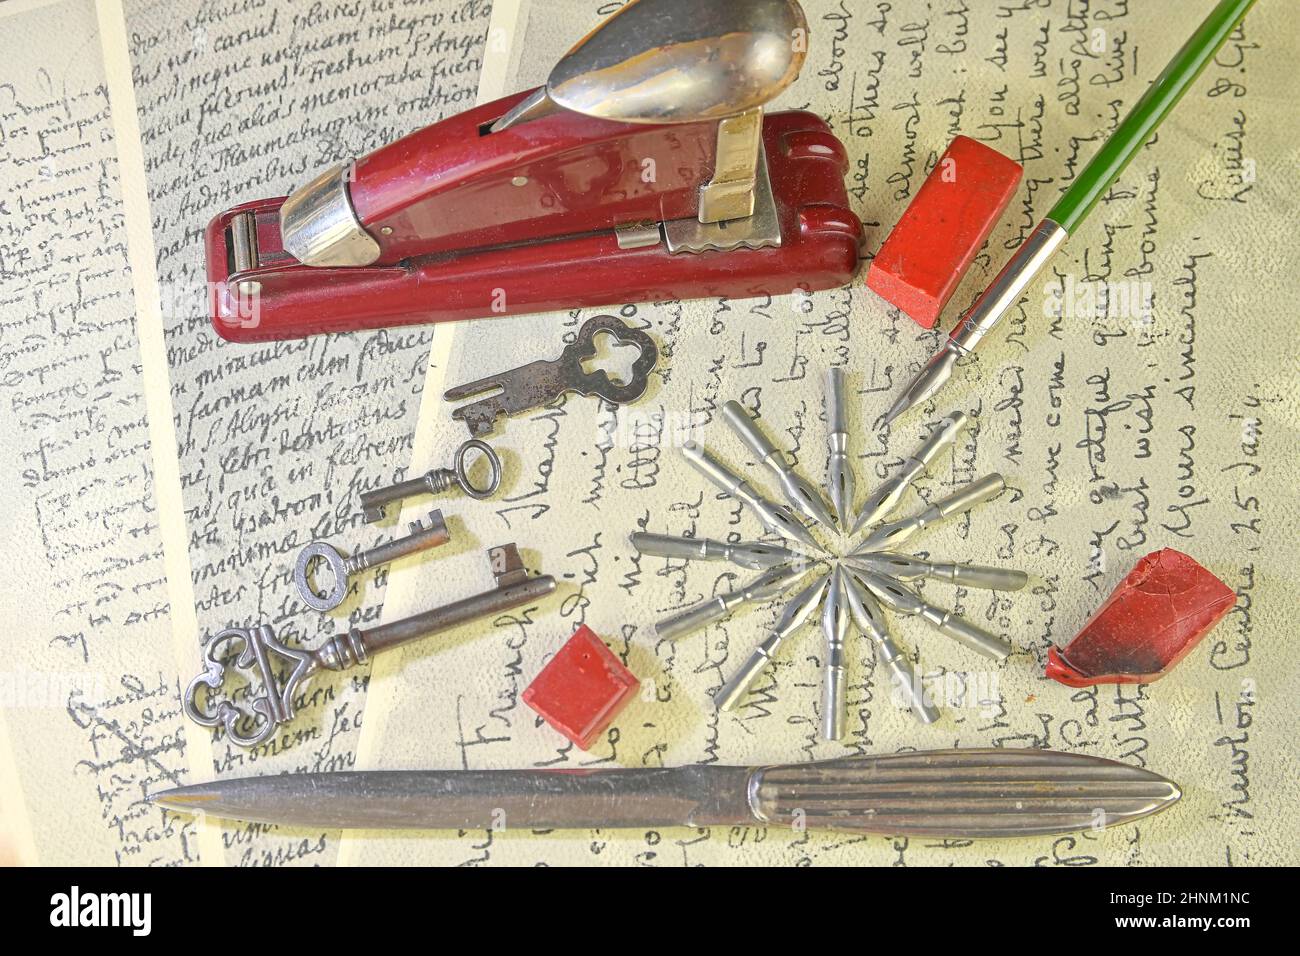 Nahaufnahme von Accessoires auf Vintage-Handschrift. Vintage-Schlüssel, Hefter, Siegelwachs, Papiermesser, Metallspitzen und alter Stift. Vintage-Schreibwaren. Flach liegend Stockfoto